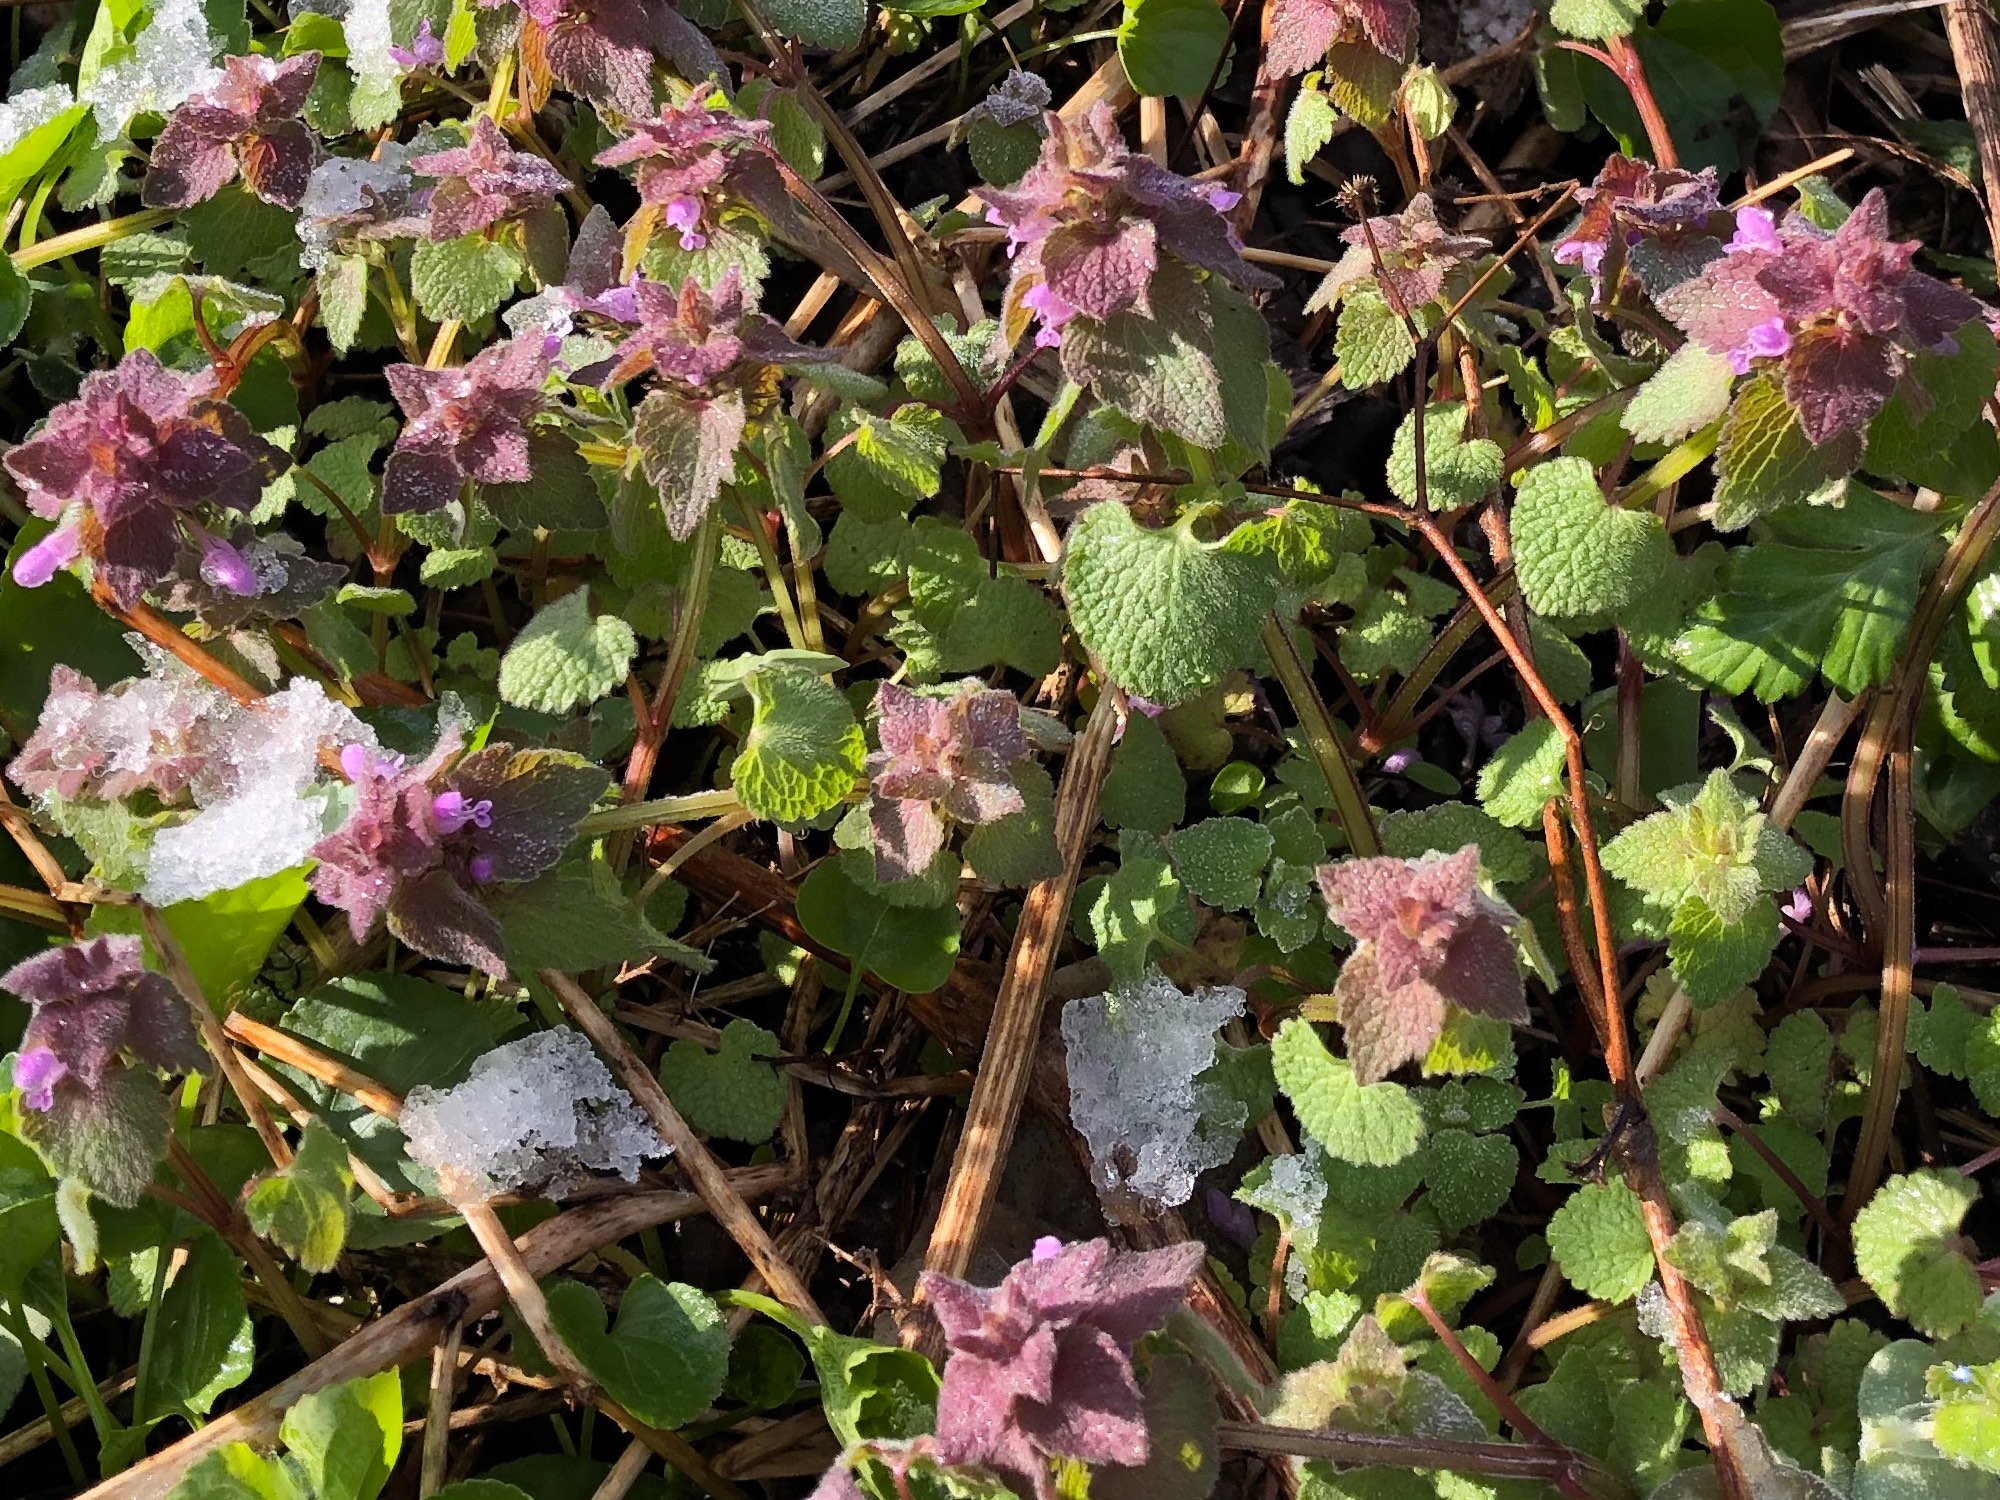 Purple Dead-Nettles in the U.W. Arboretum Oak Savanna in Madison, Wisconsin on April 28, 2019.